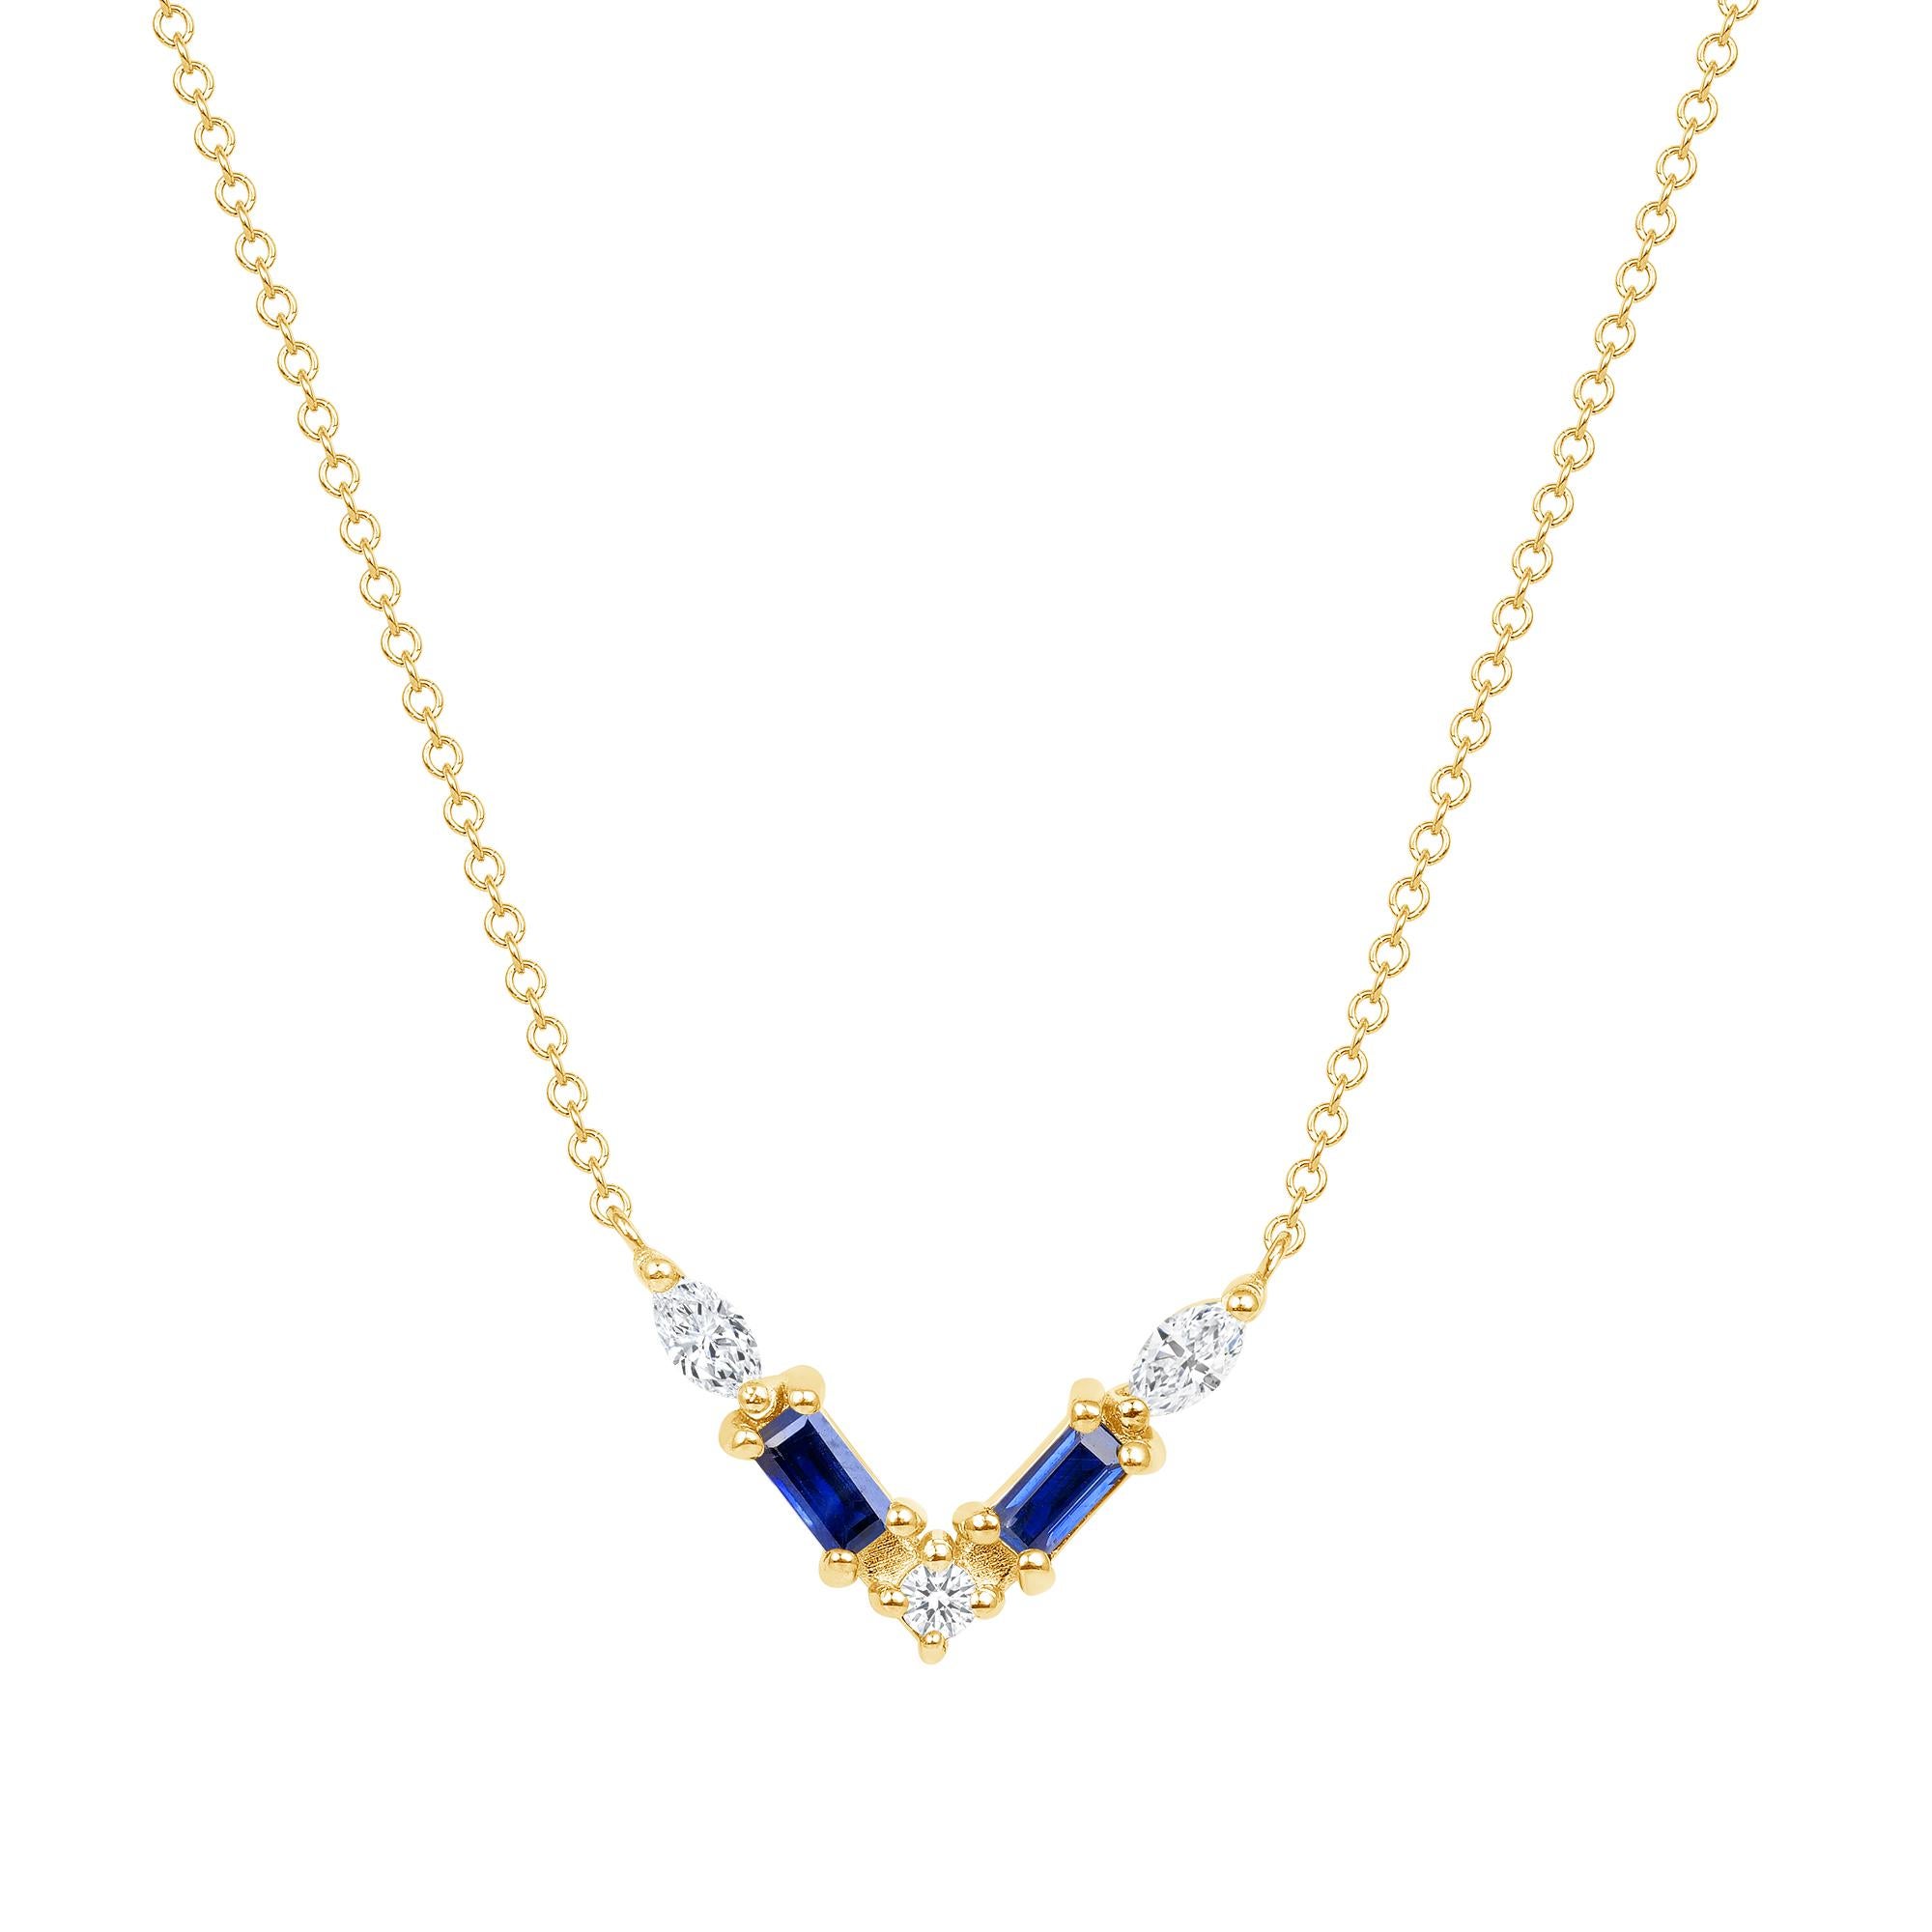 Diese aus 14-karätigem Gold gefertigte Halskette zeichnet sich durch eine durchdachte Anordnung von blauen Saphiren und Diamantenpavé aus, die elegant entlang einer V-förmigen Ebene angeordnet sind. Der aus 14-karätigem Weißgold gefertigte Schmuck